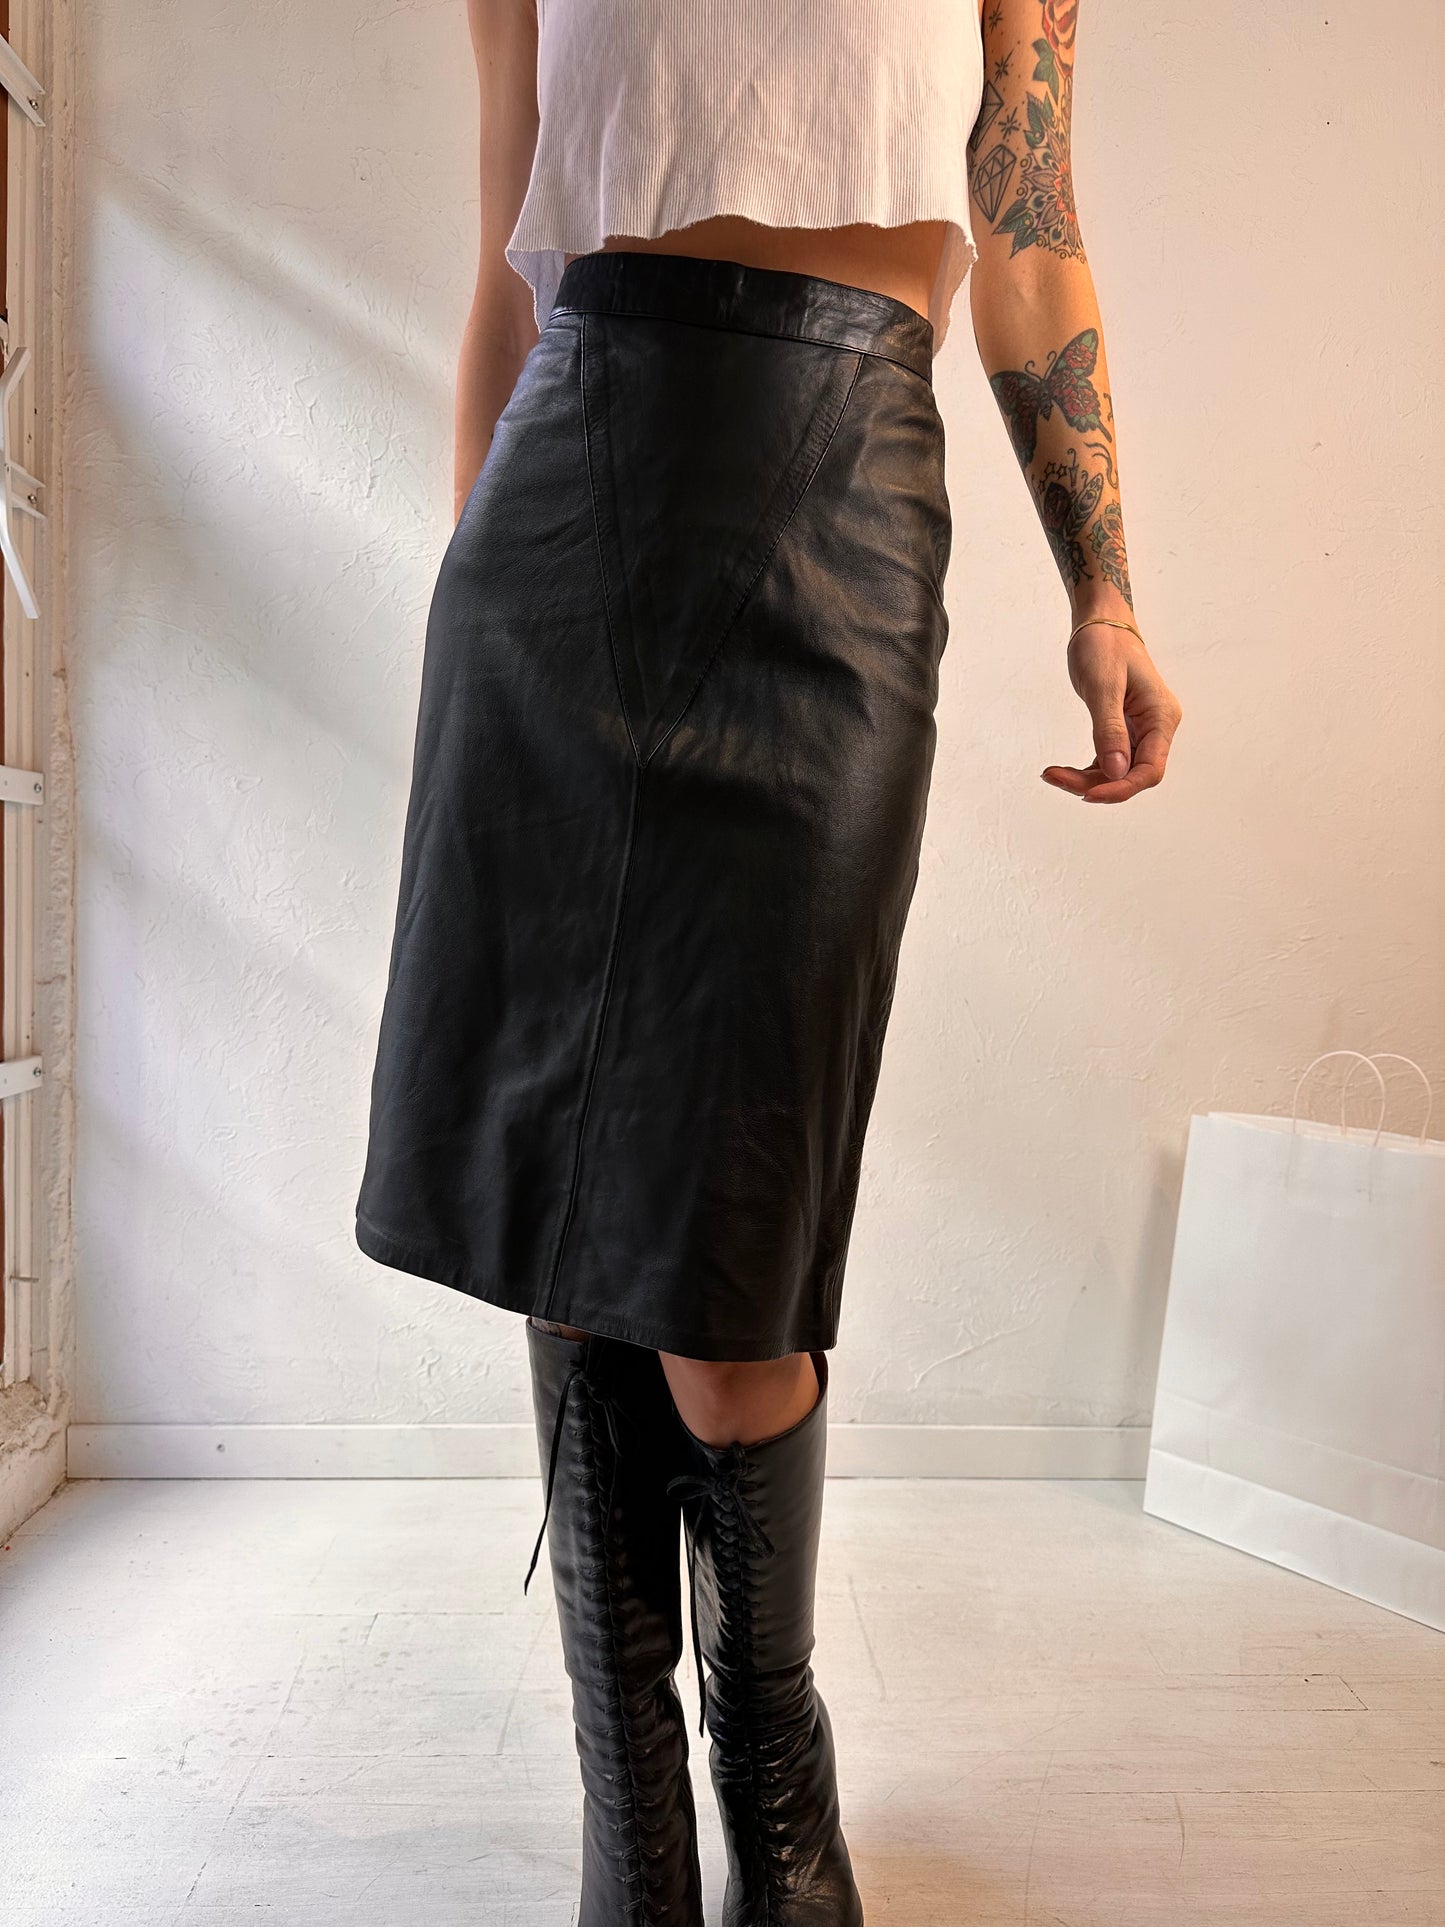 Vintage Handmade Black Leather Pencil Skirt / Small